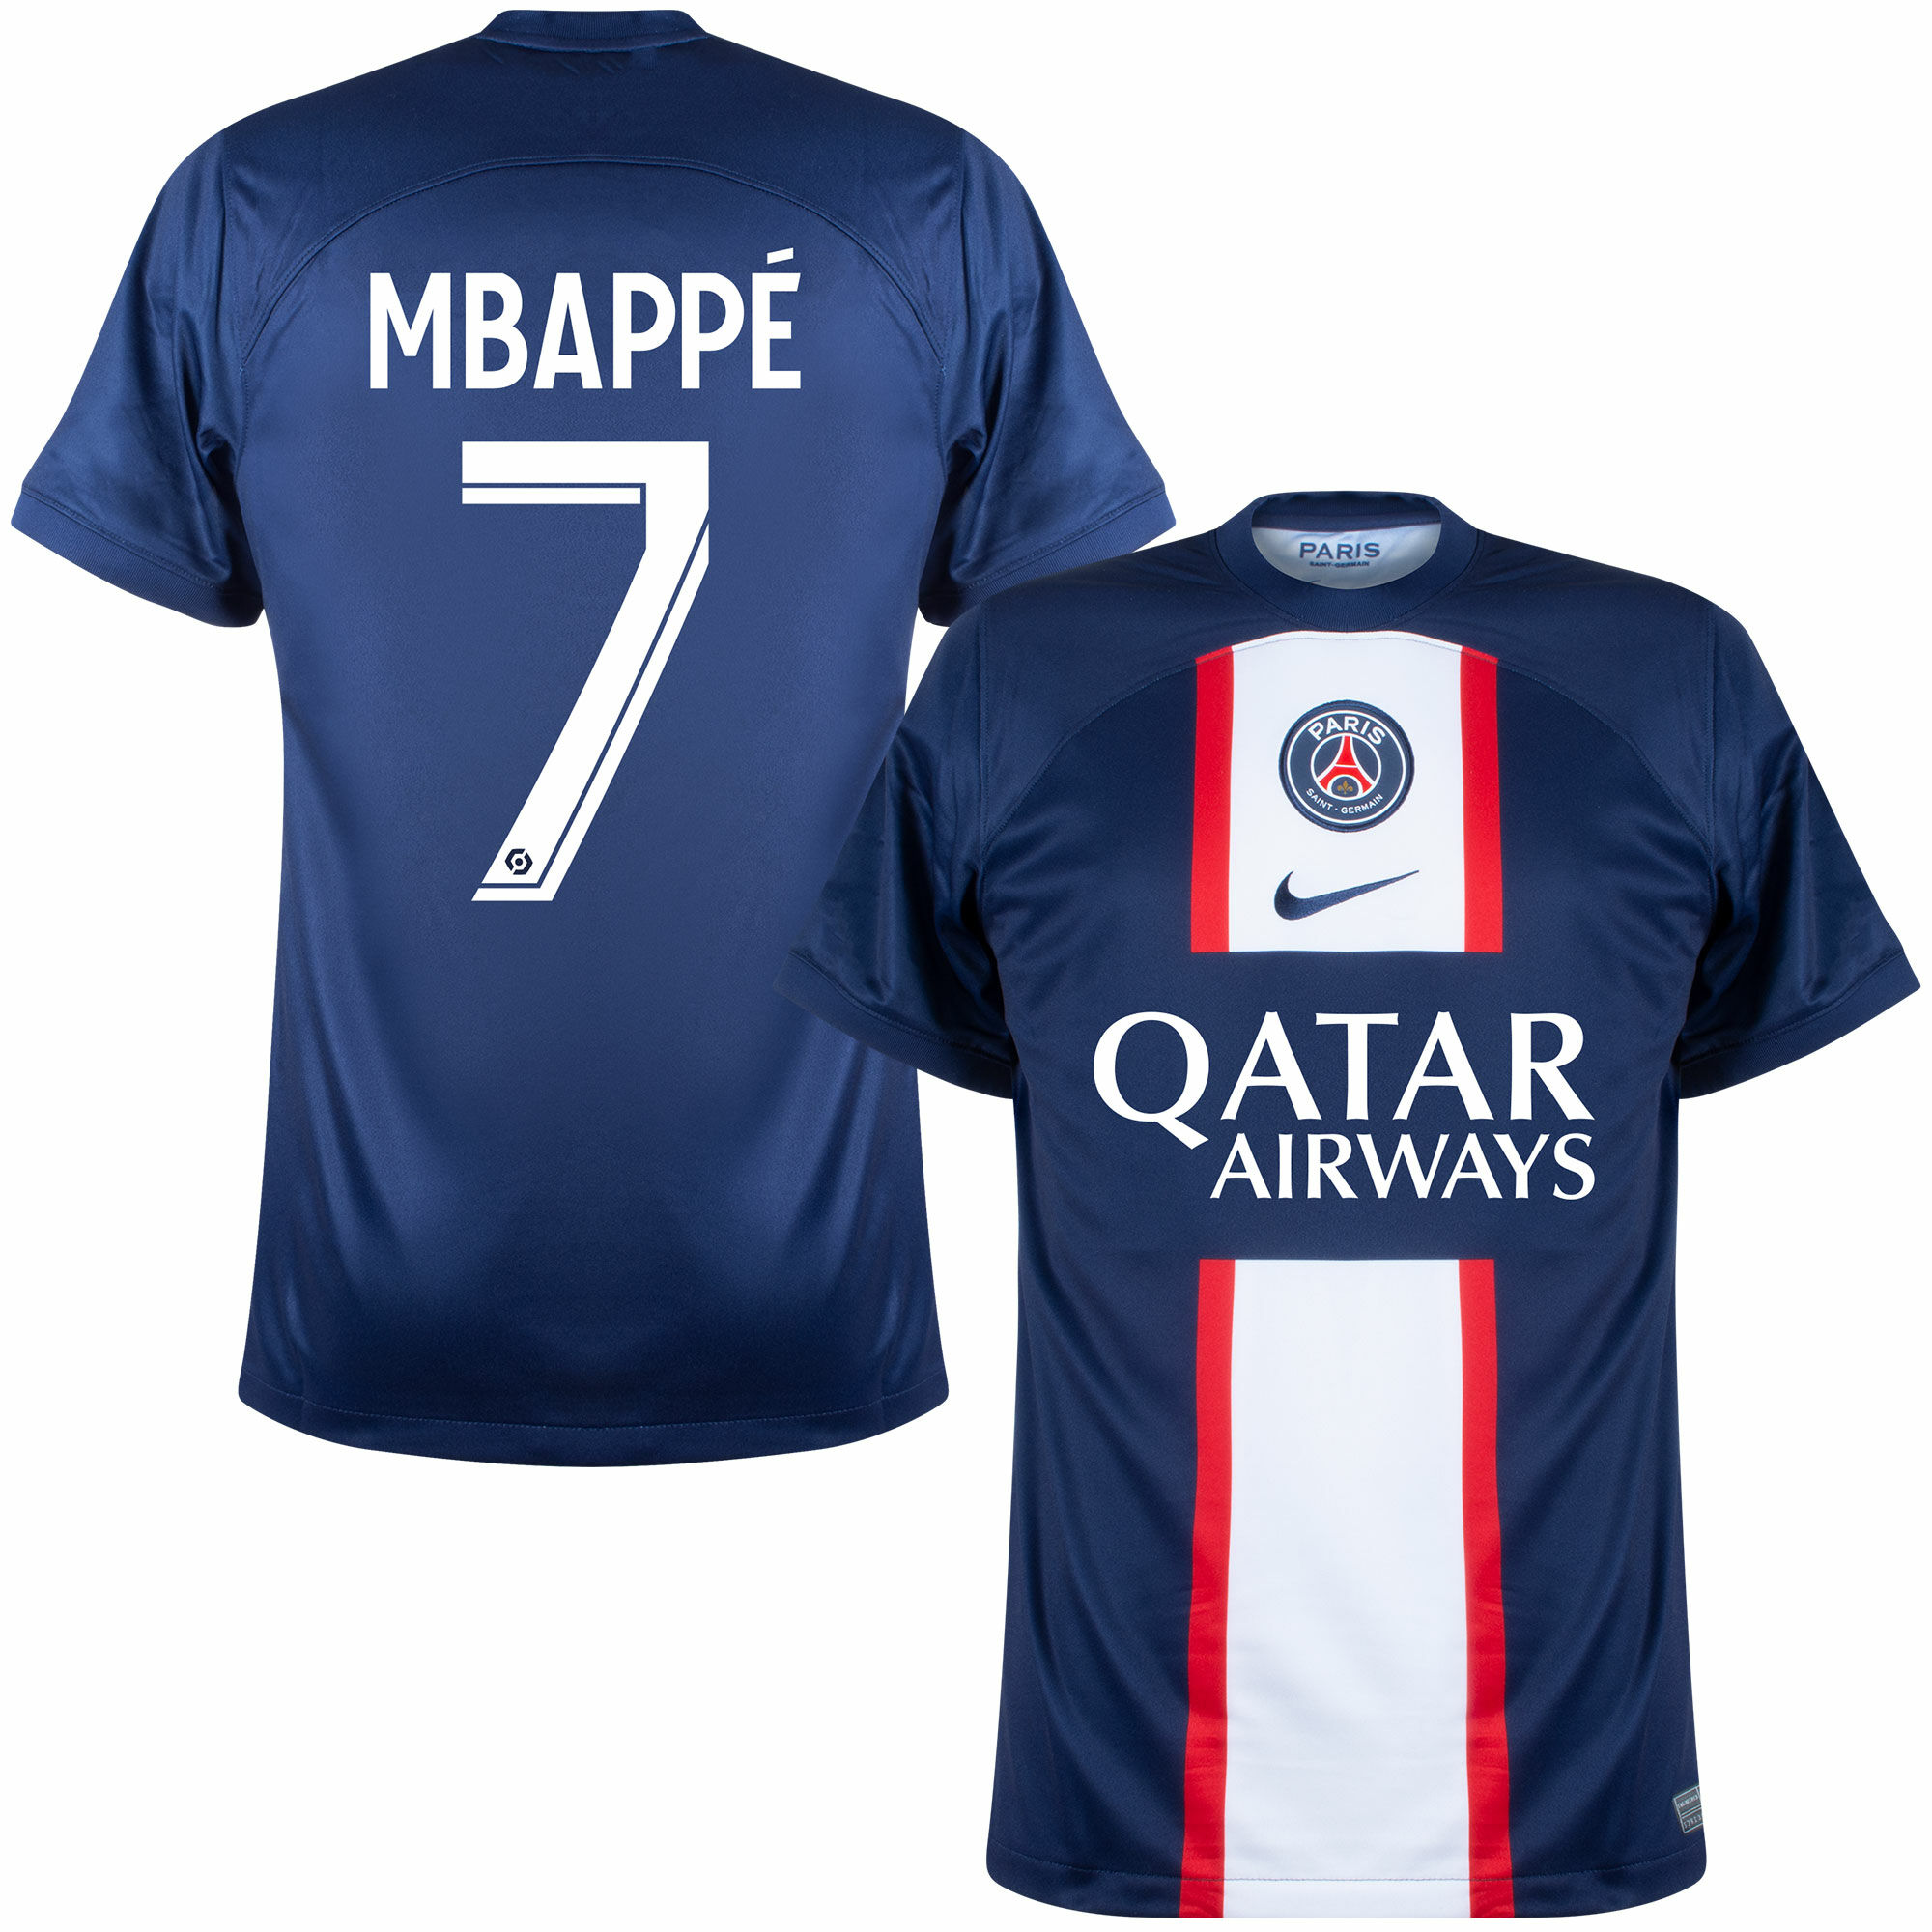 Paris Saint Germain - Dres fotbalový - Kylian Mbappé, domácí, sezóna 2022/23, potisk Ligue 1, číslo 7, modrý